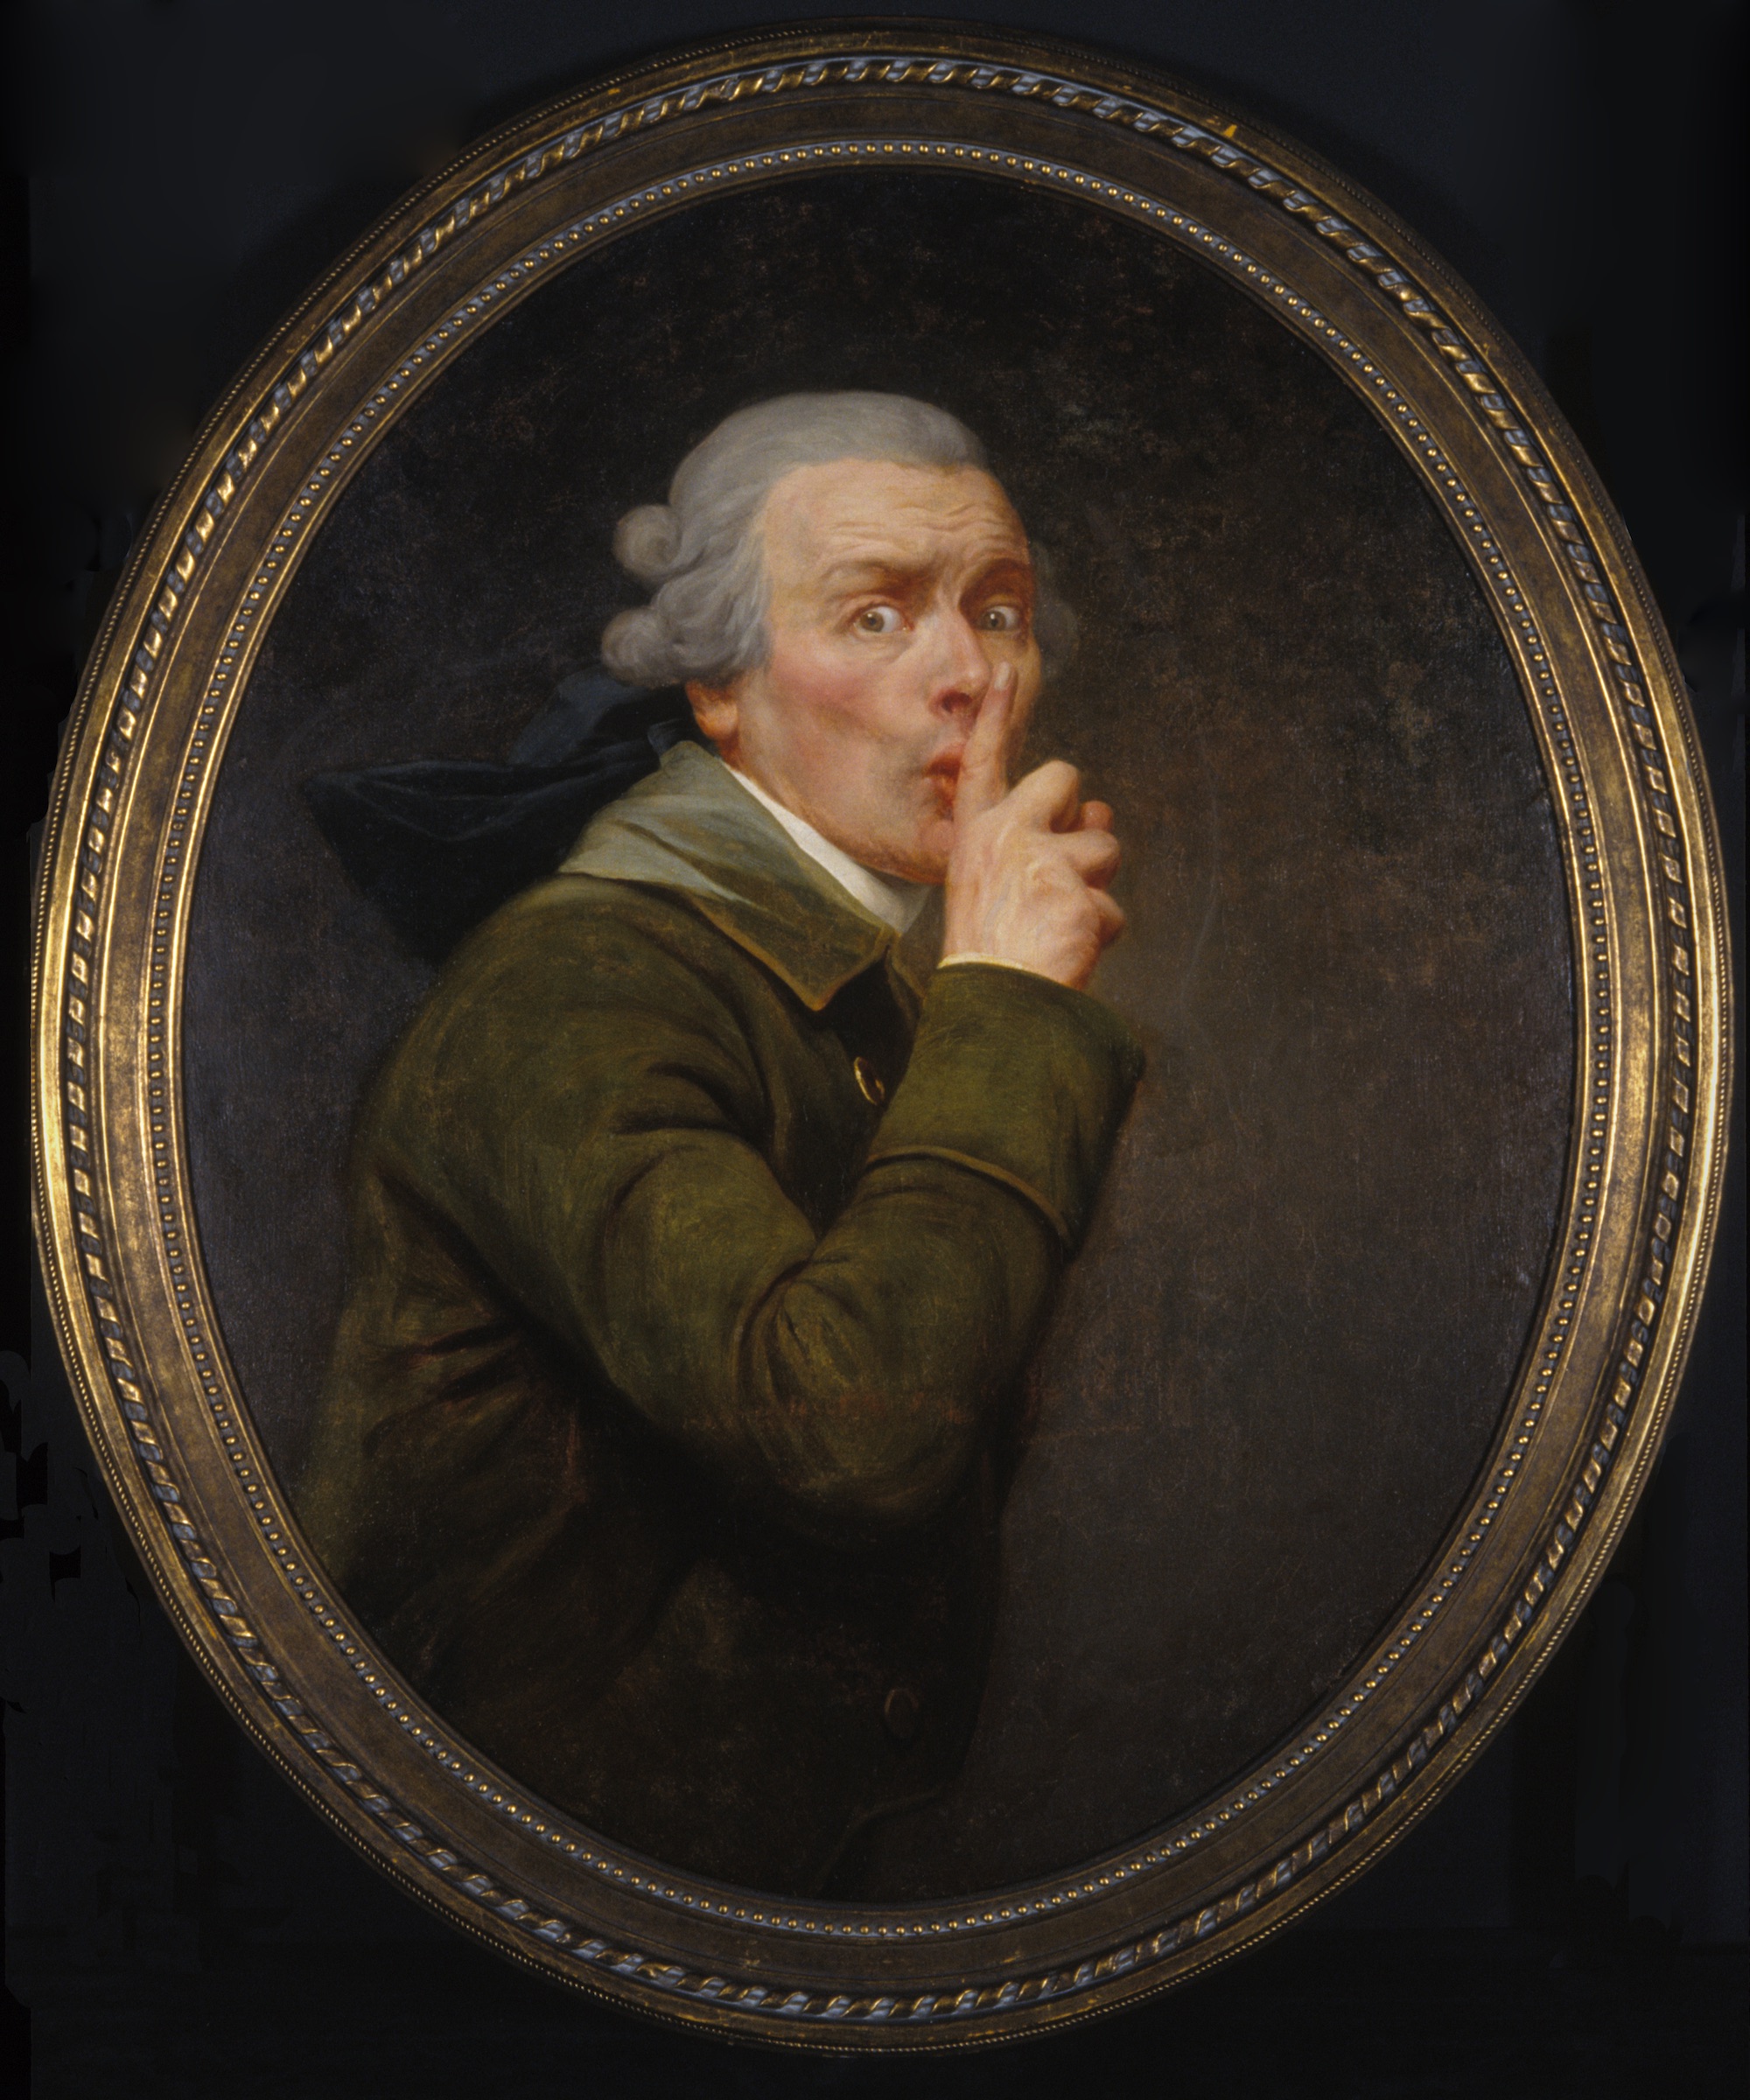 安靜 by Joseph Ducreux - 約1791 - 91.6 x 79.9 cm 